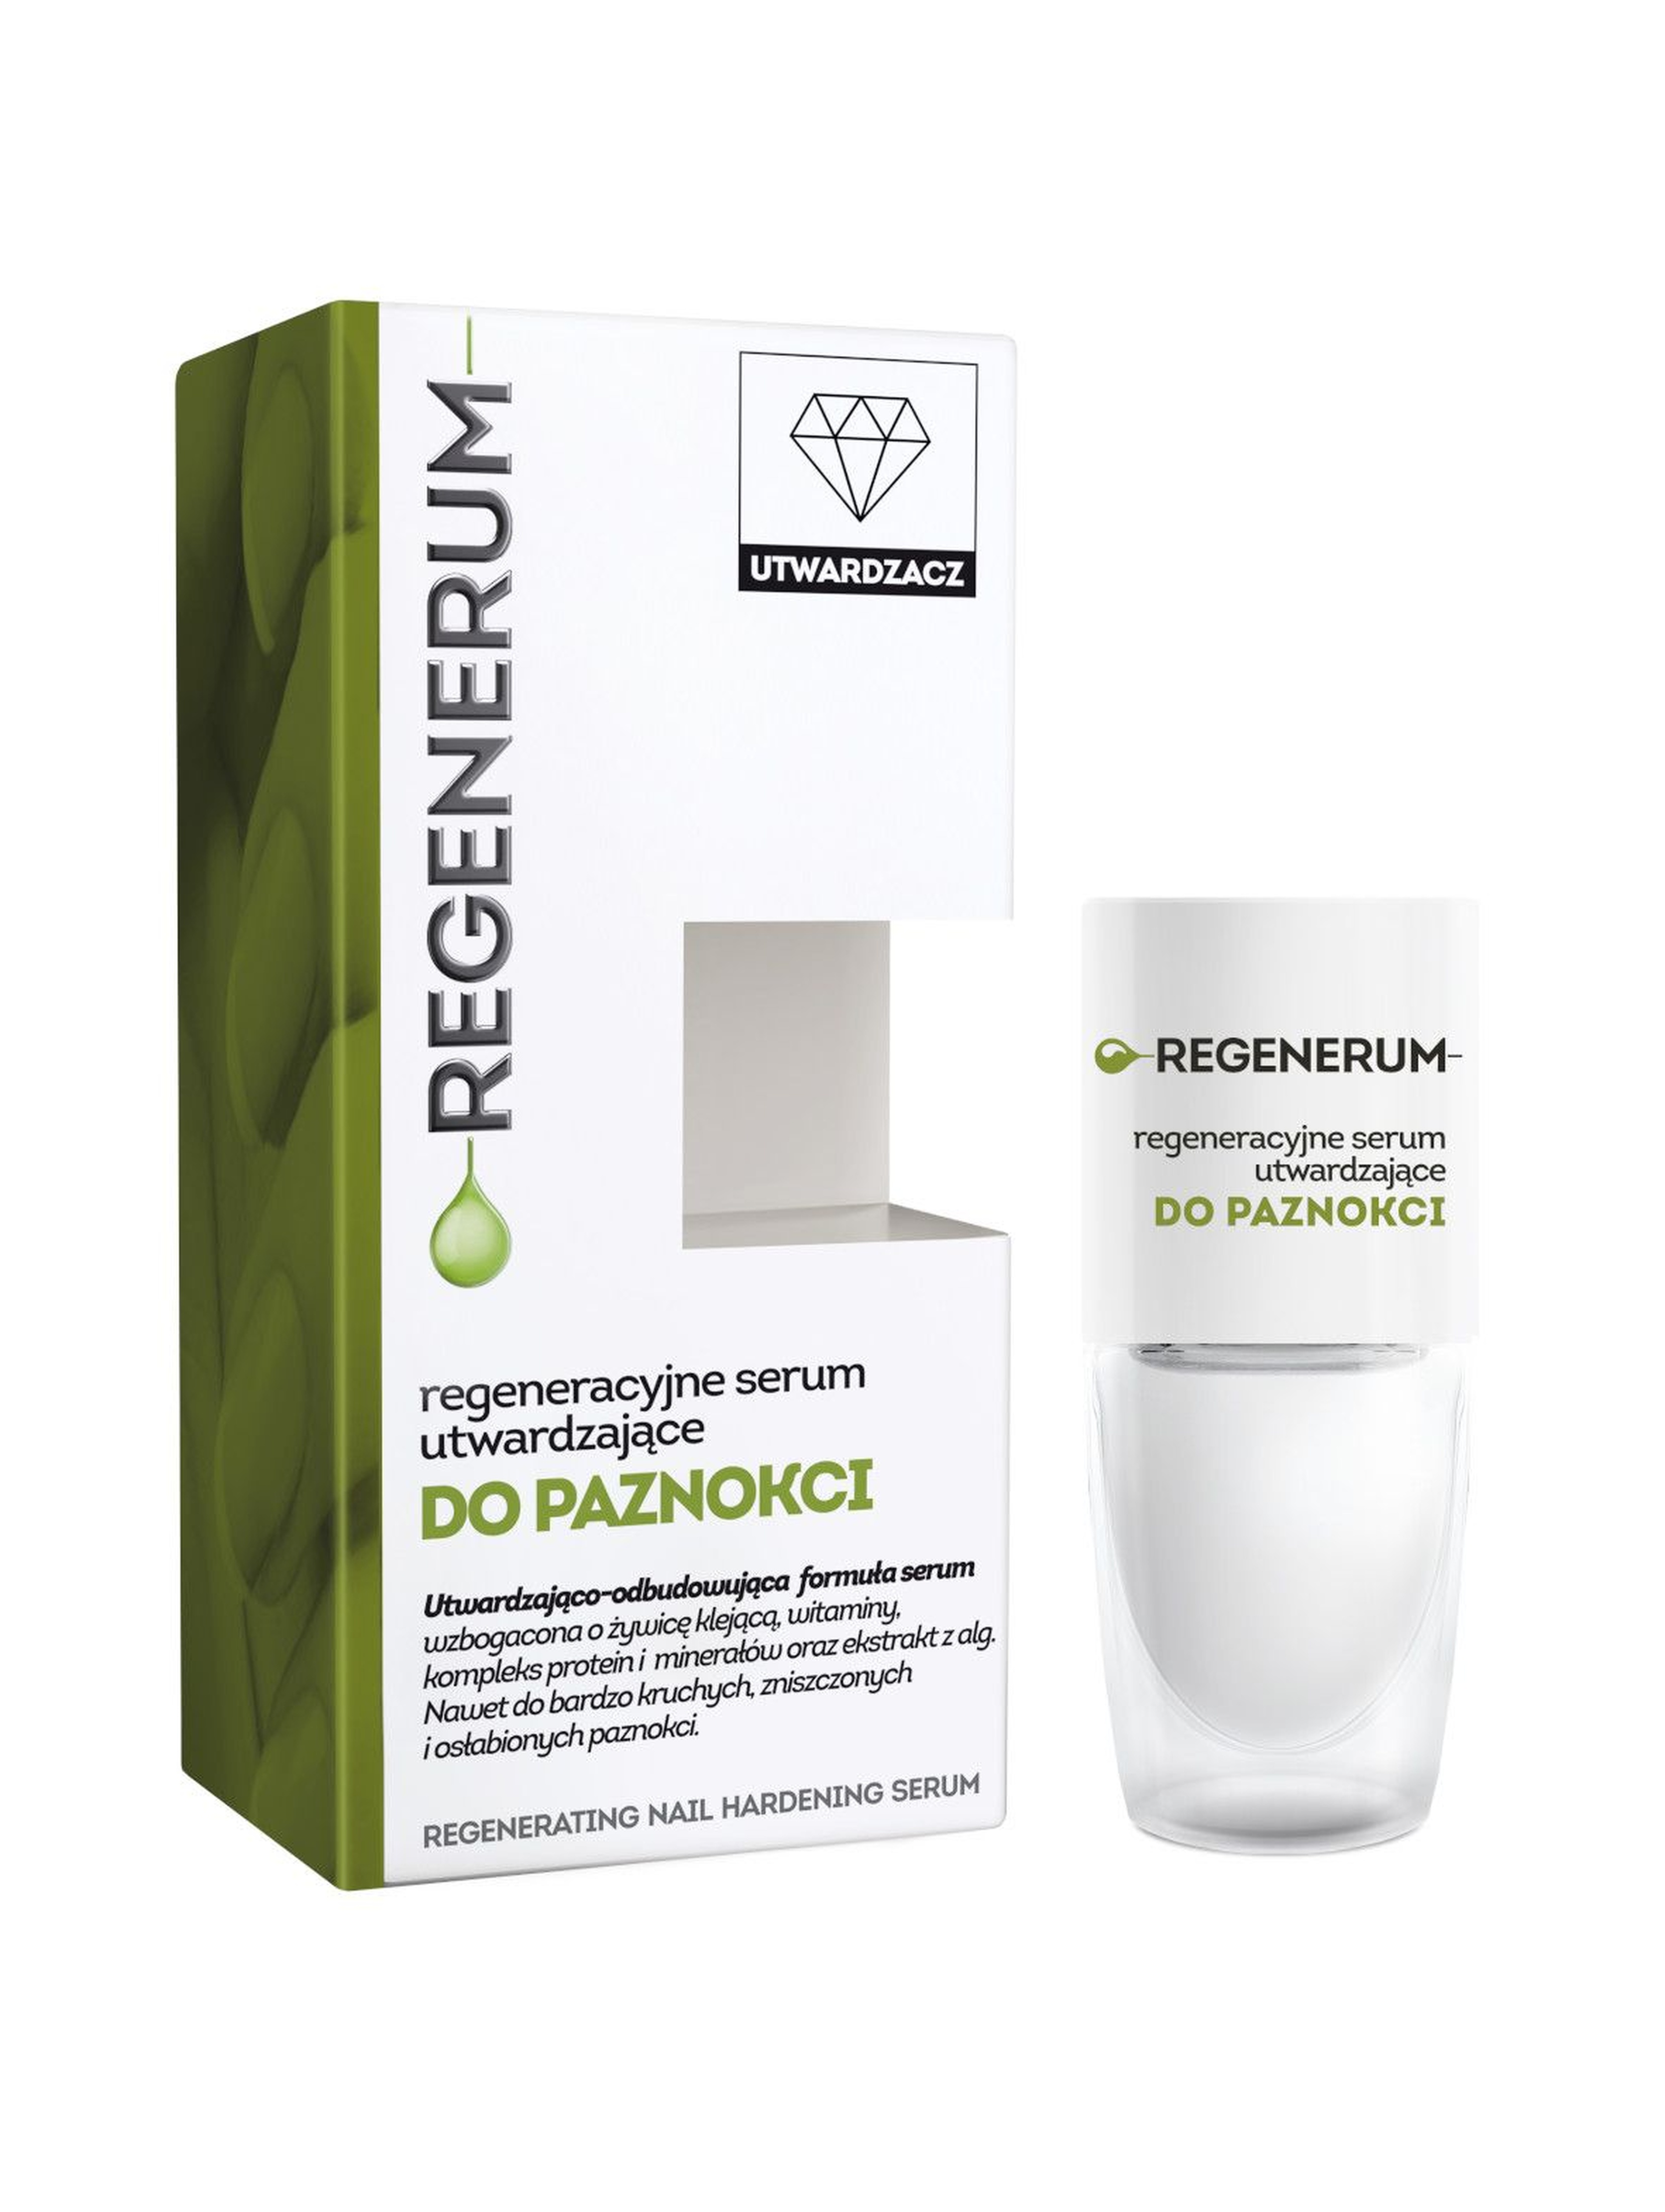 REGENERUM regeneracyjne serum utwardzające do paznokci, 8 ml